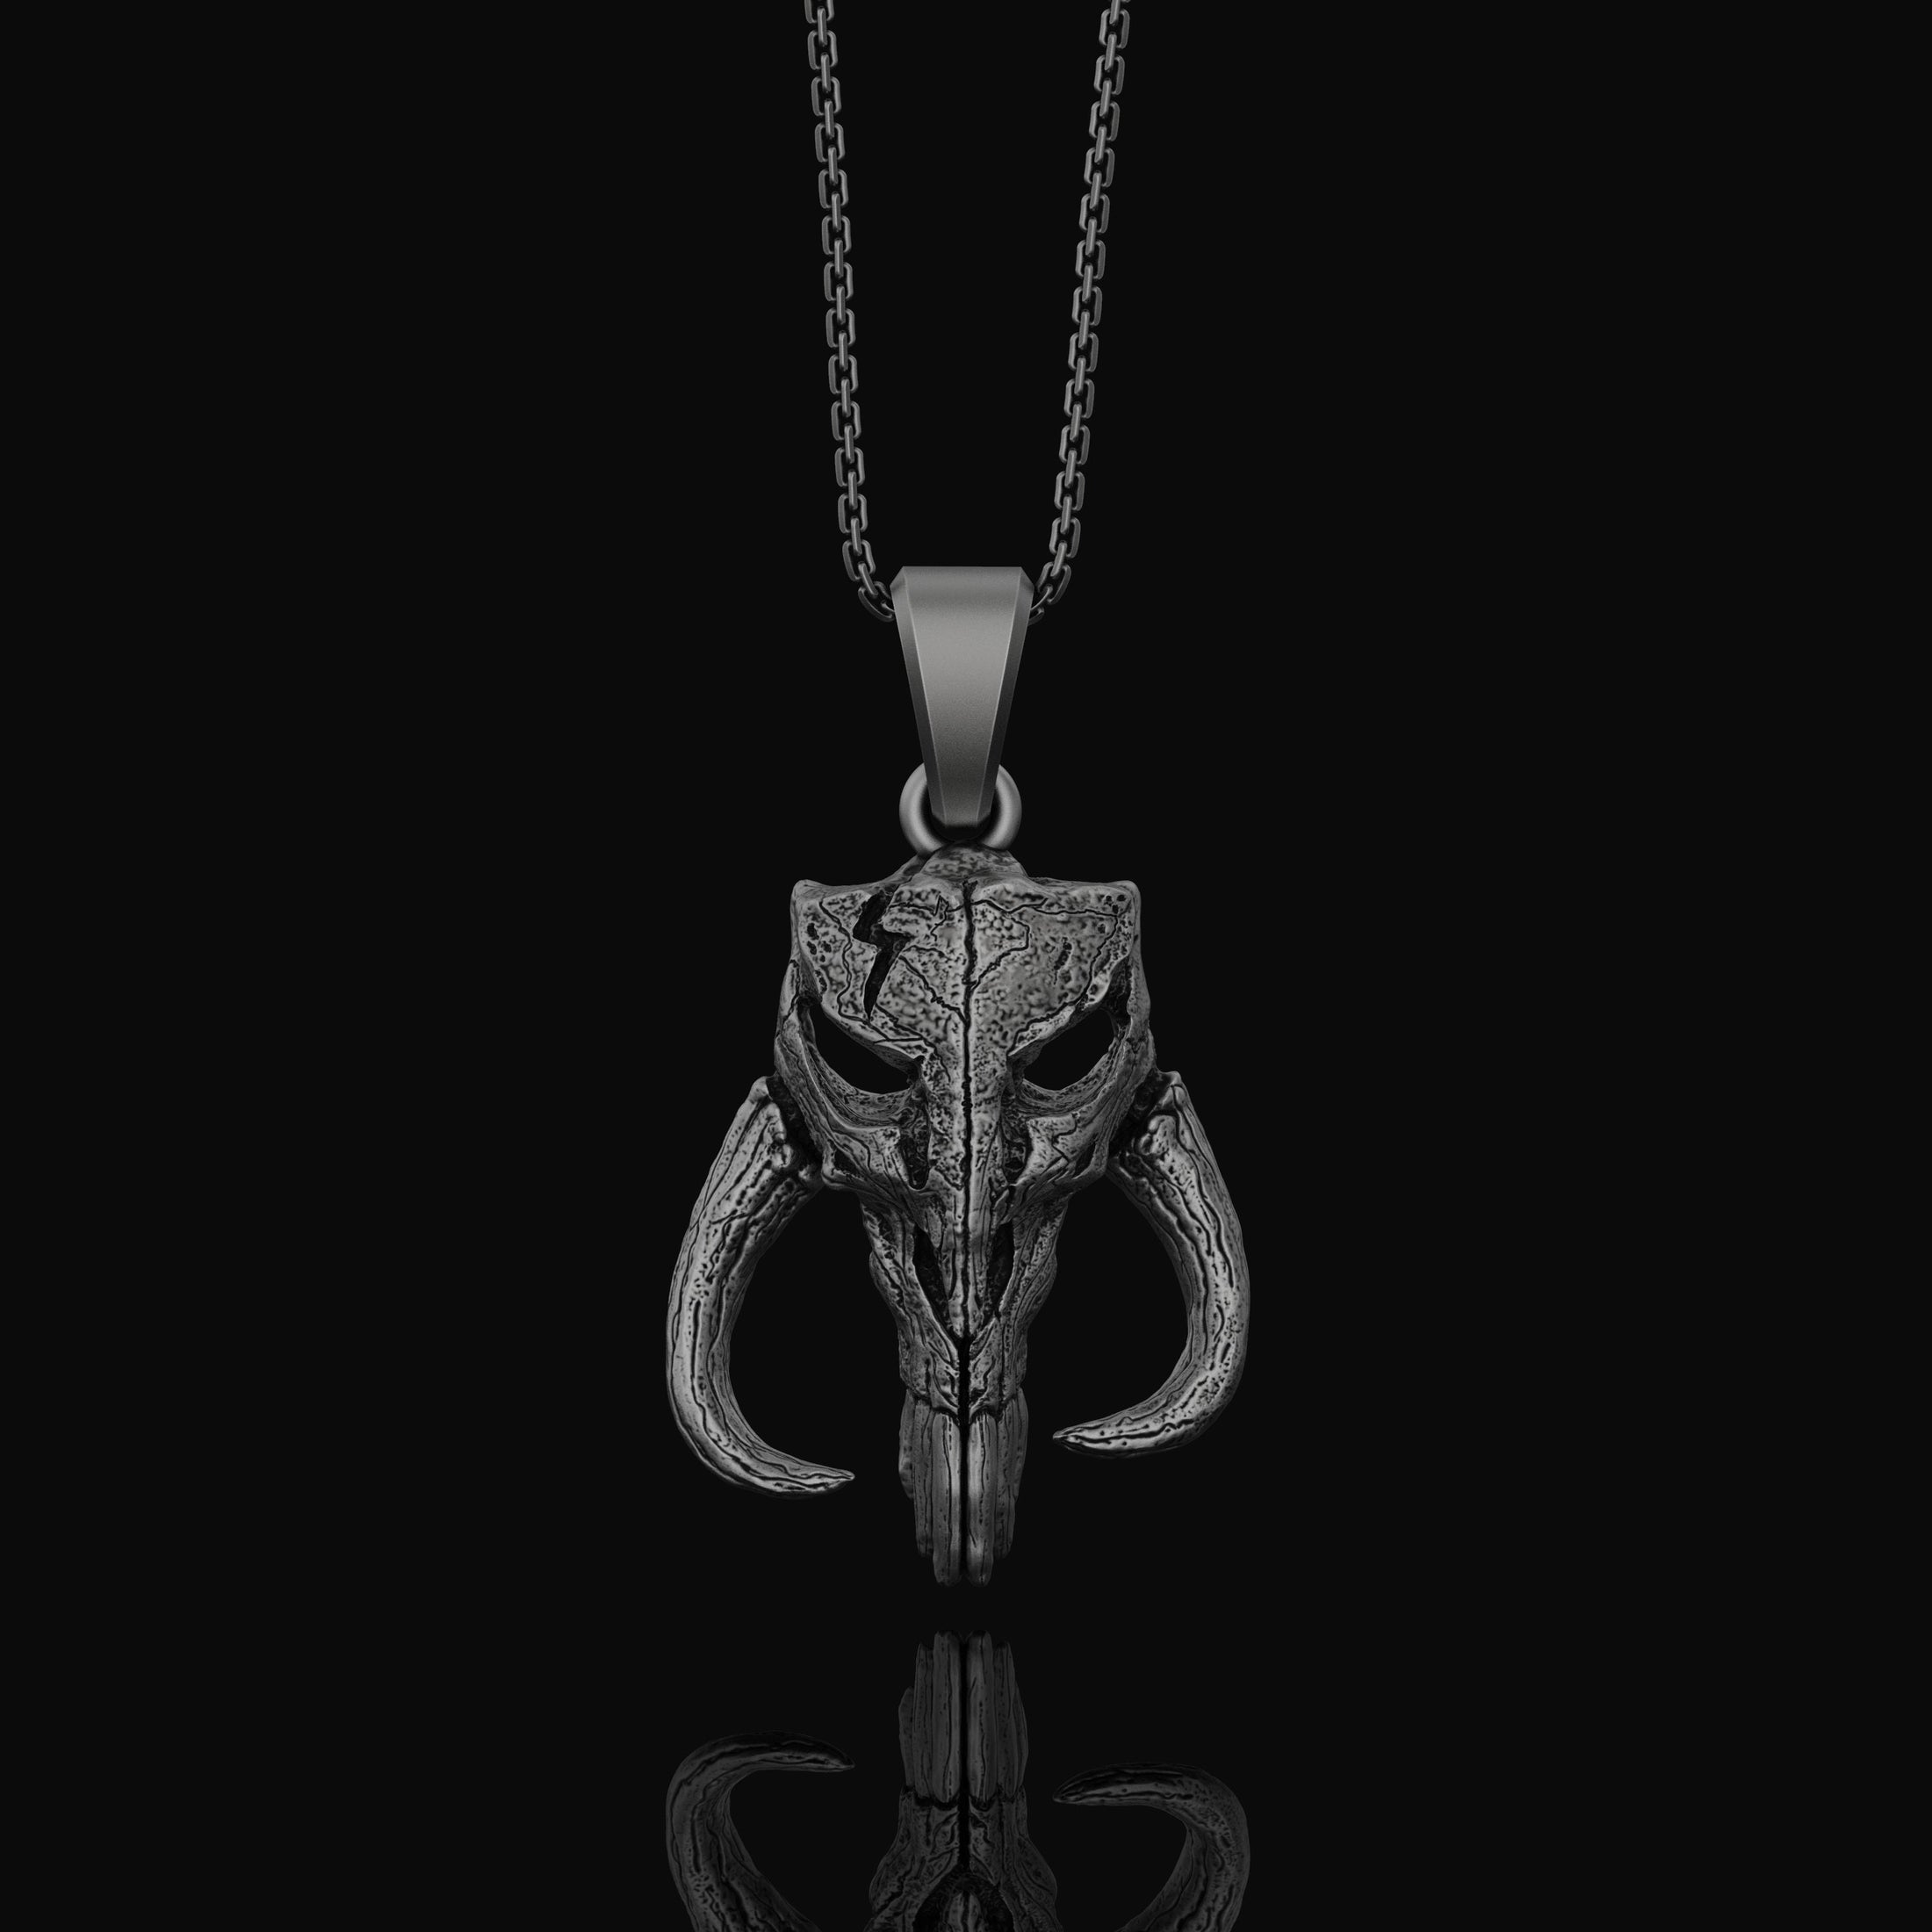 Silver Mythosaur Skull Necklace - Star Wars Mandalorian Pendant, Geek Culture Jewelry, Fan Gift, Sci-Fi Lover Jewelry